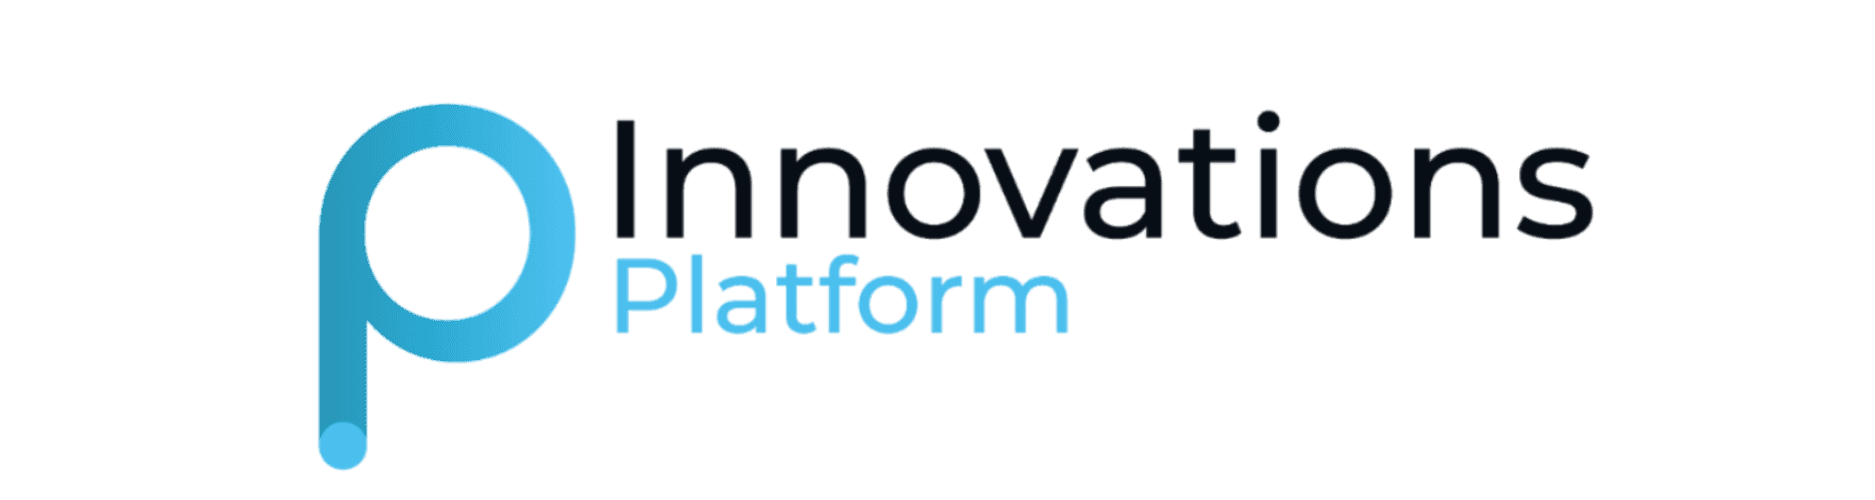 Innovations Platform